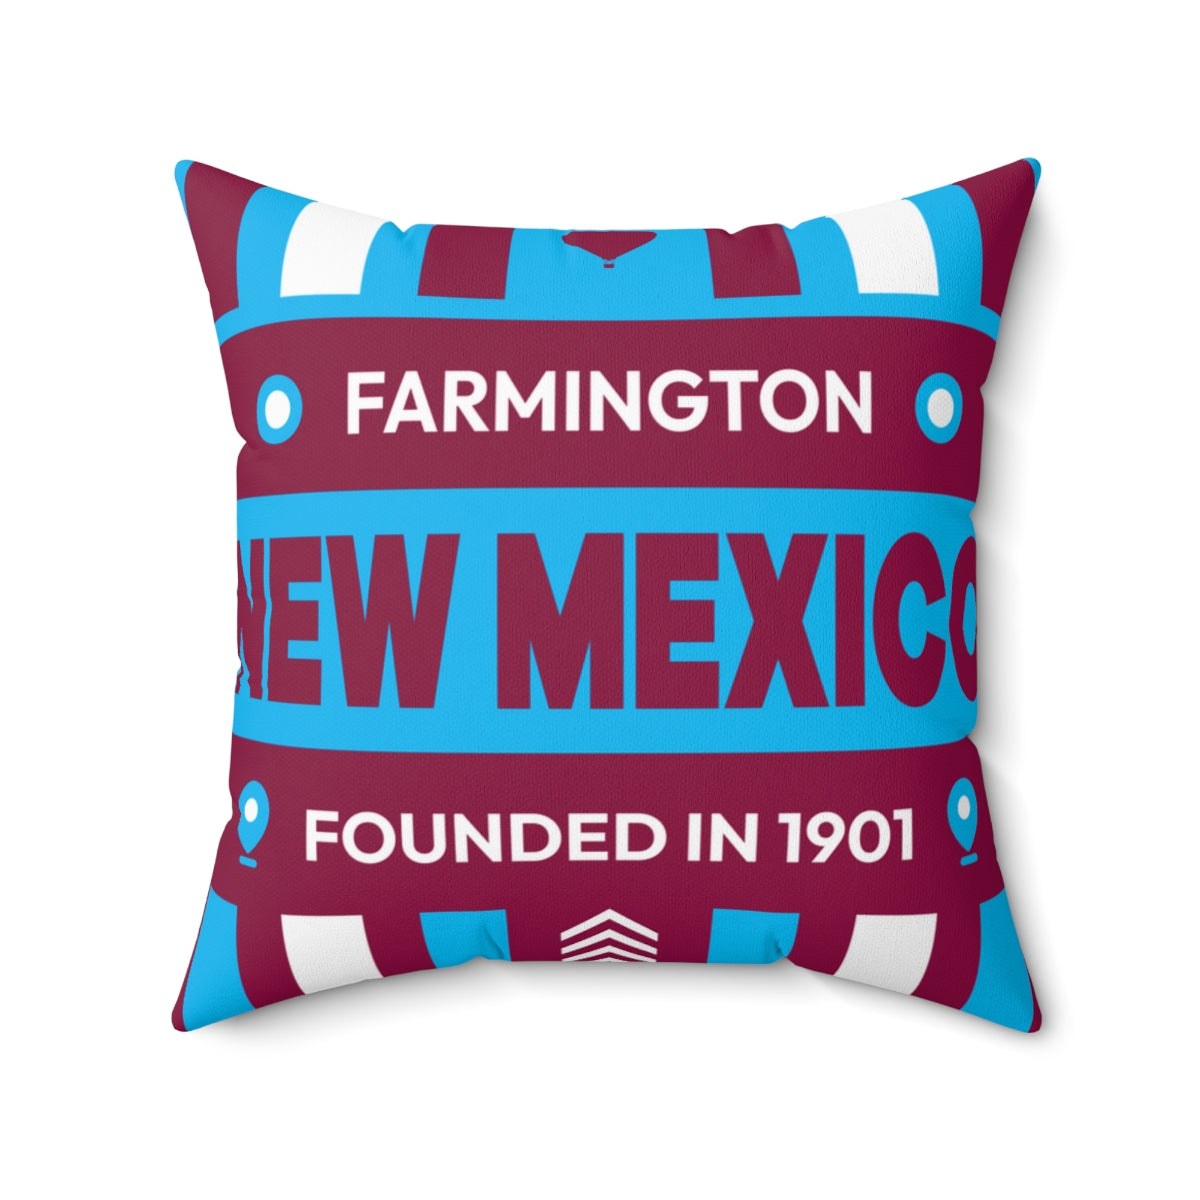 20"x20" pillow design for Farmington, New Mexico Top view.